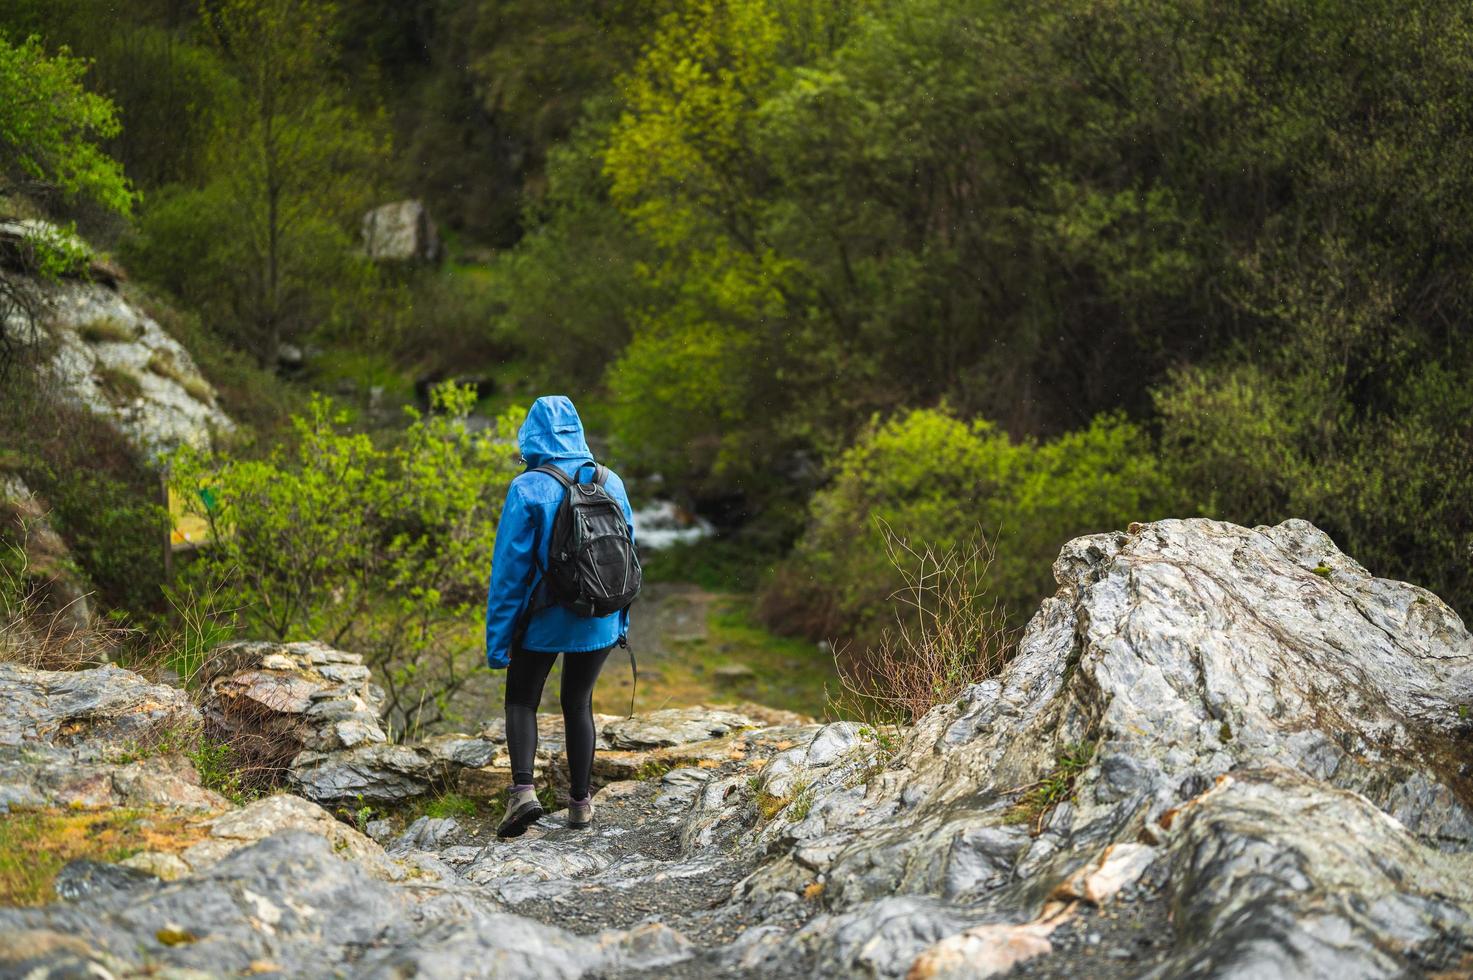 garota caminhando na montanha enquanto chove com vegetação foto